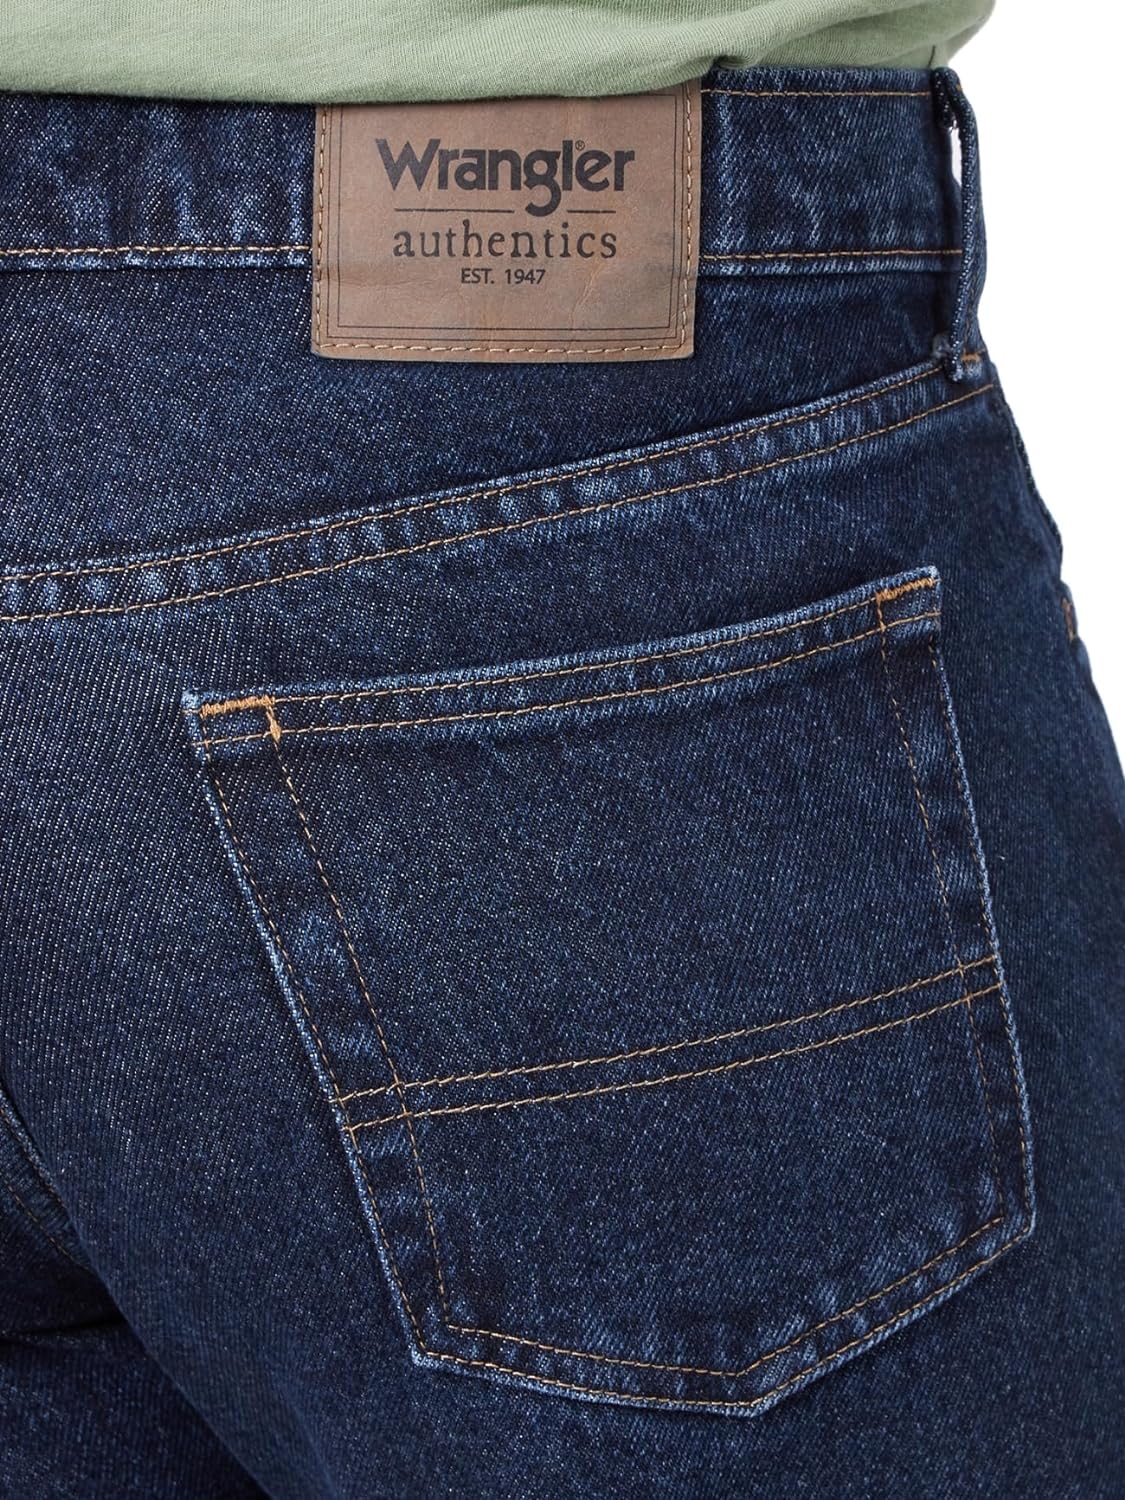 سروال جينز قطن كلاسيكي للرجال بخمسة جيوب وقصة عادية من رانجلر اوثانتيكس